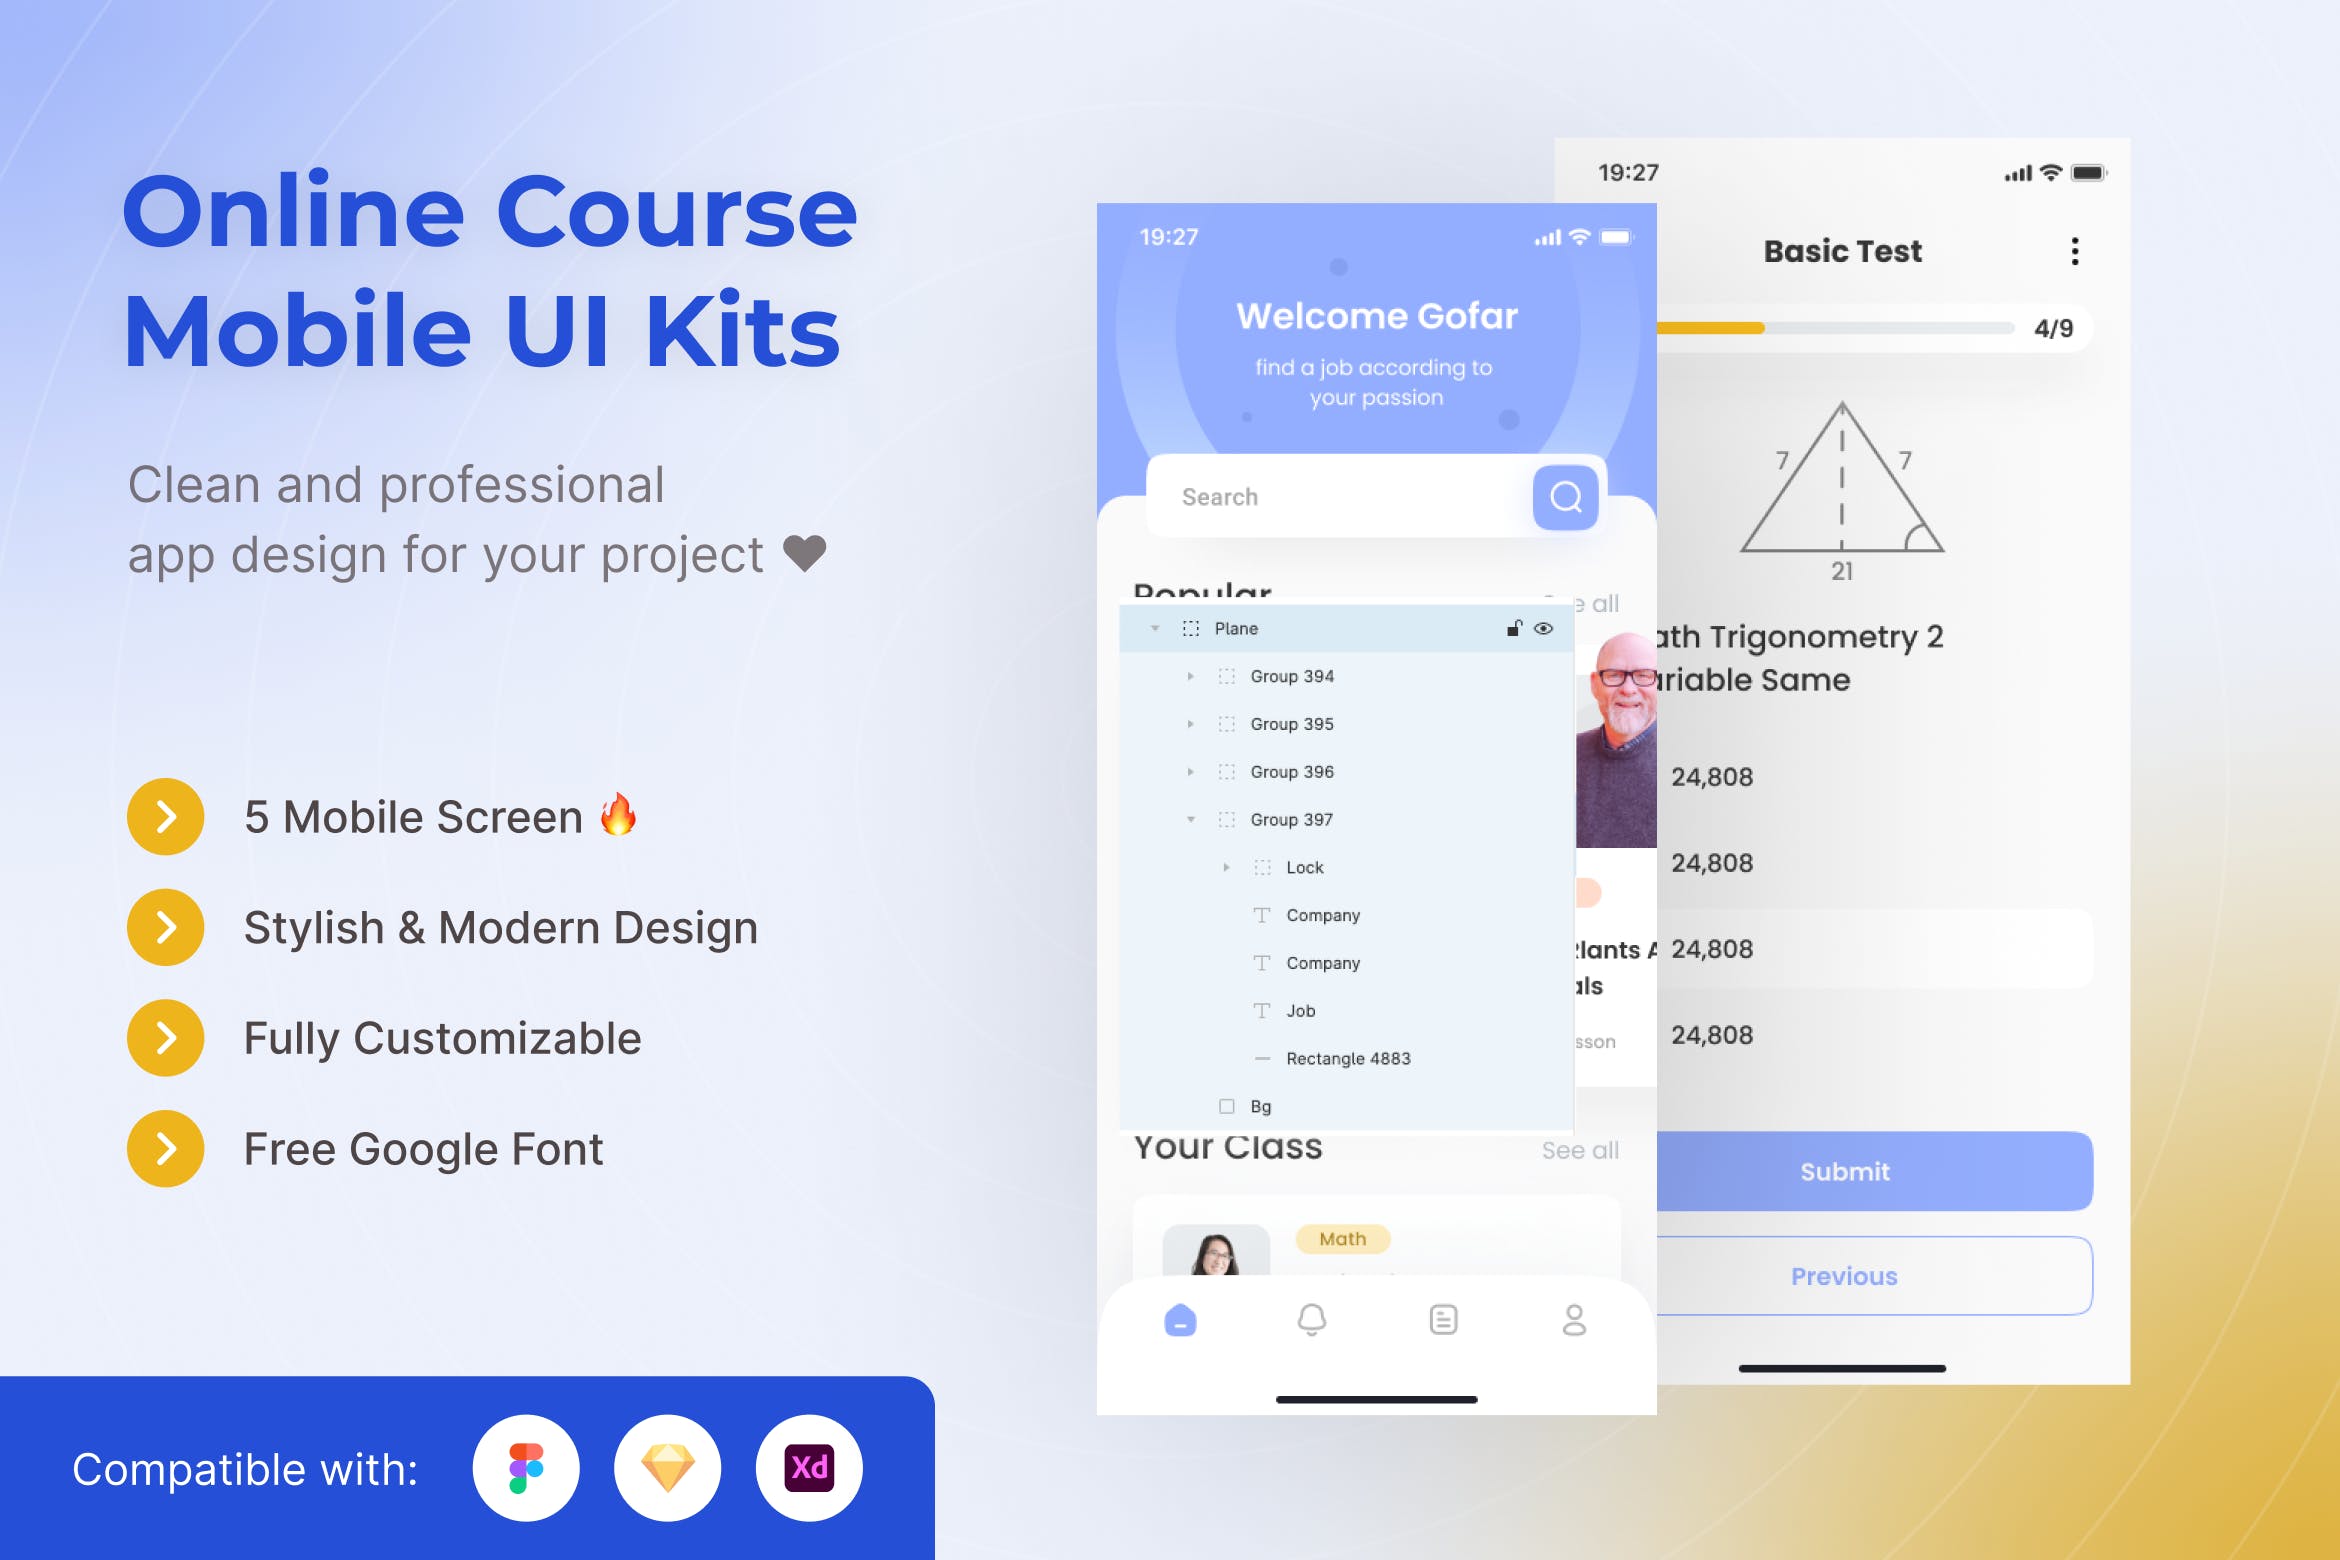 在线课程学习App移动应用UI套件模板 Online Course Study Mobile App UI Kits Template